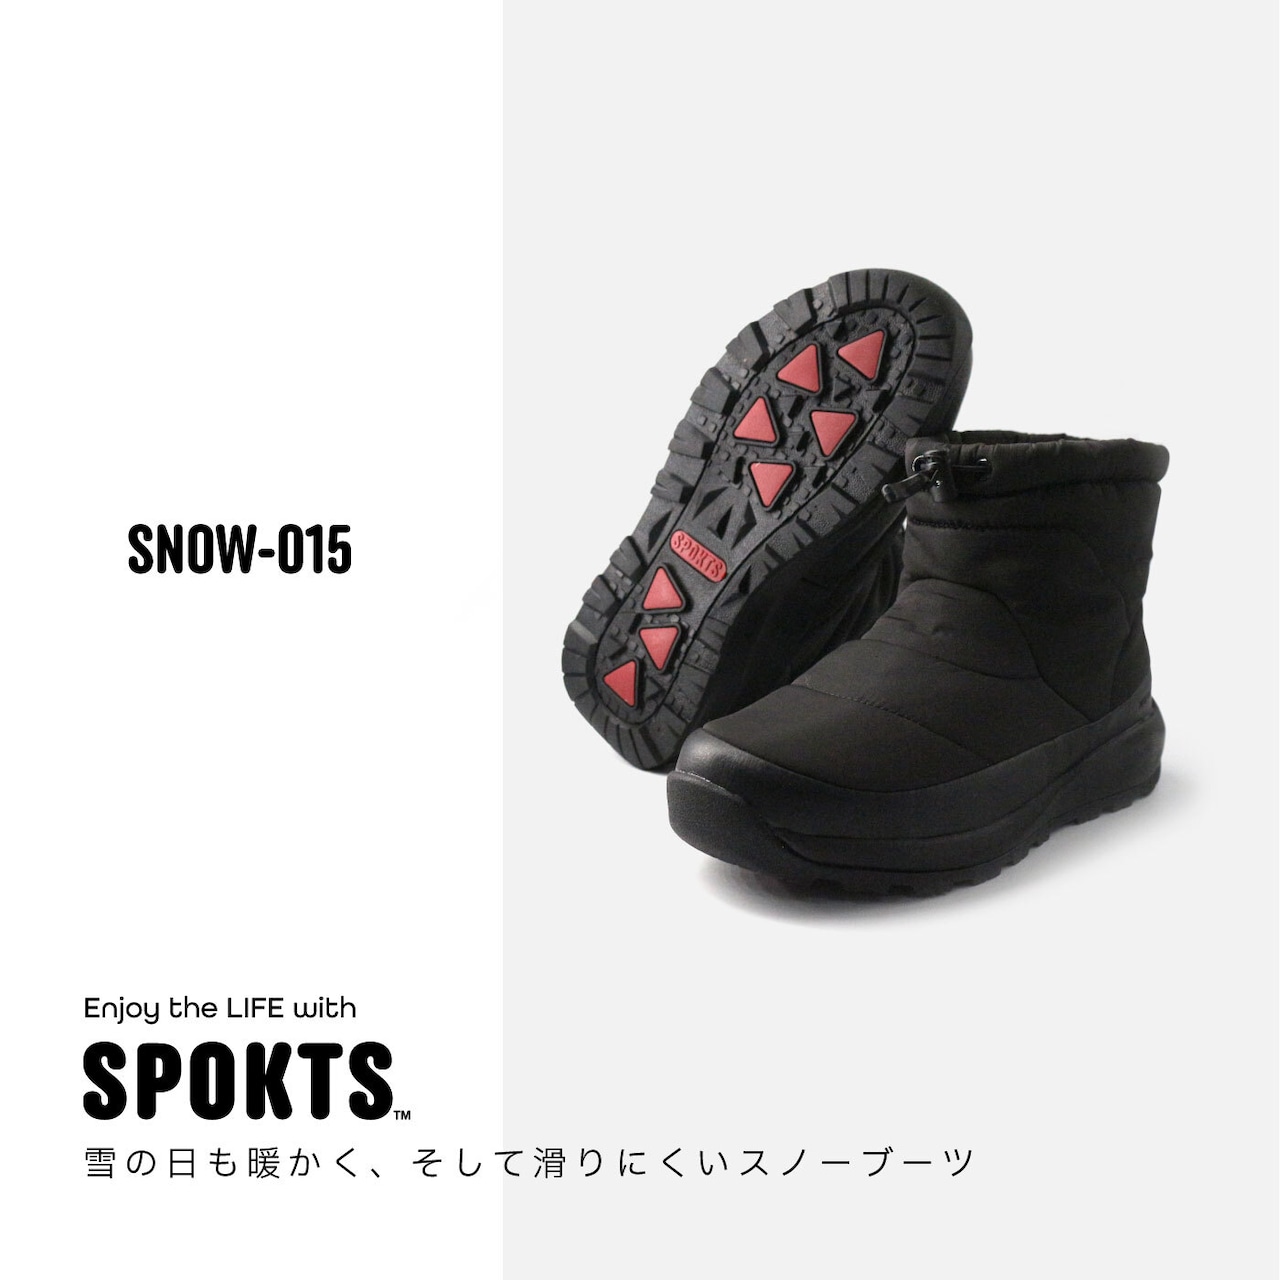 SPOKTS スノーブーツ ショート SNOW-015 レディース メンズ 5カラー